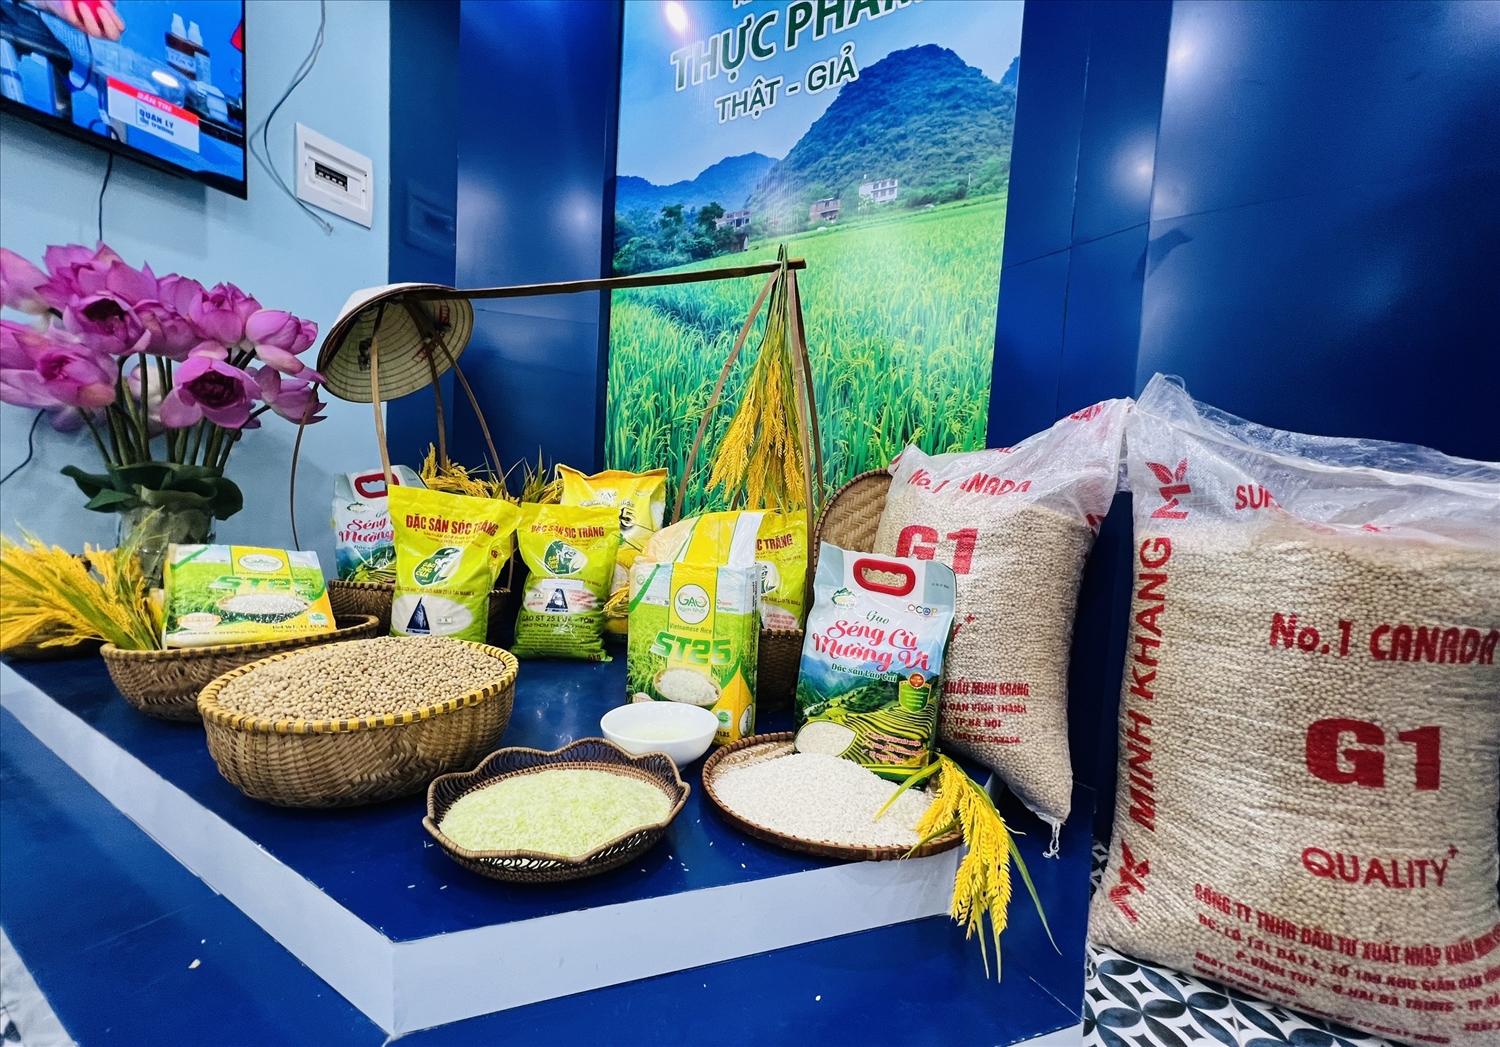 Các mặt hàng như gạo ST25, bánh cốm Nguyên Ninh, các sản phẩm nước uống, bánh kẹo, bột ngọt Ajnomoto... được trưng bày tại đây giúp người tiêu dùng nâng cao nhận thức trong việc mua sắm sản phẩm thực phẩm chính hãng, rõ nguồn gốc xuất xứ.